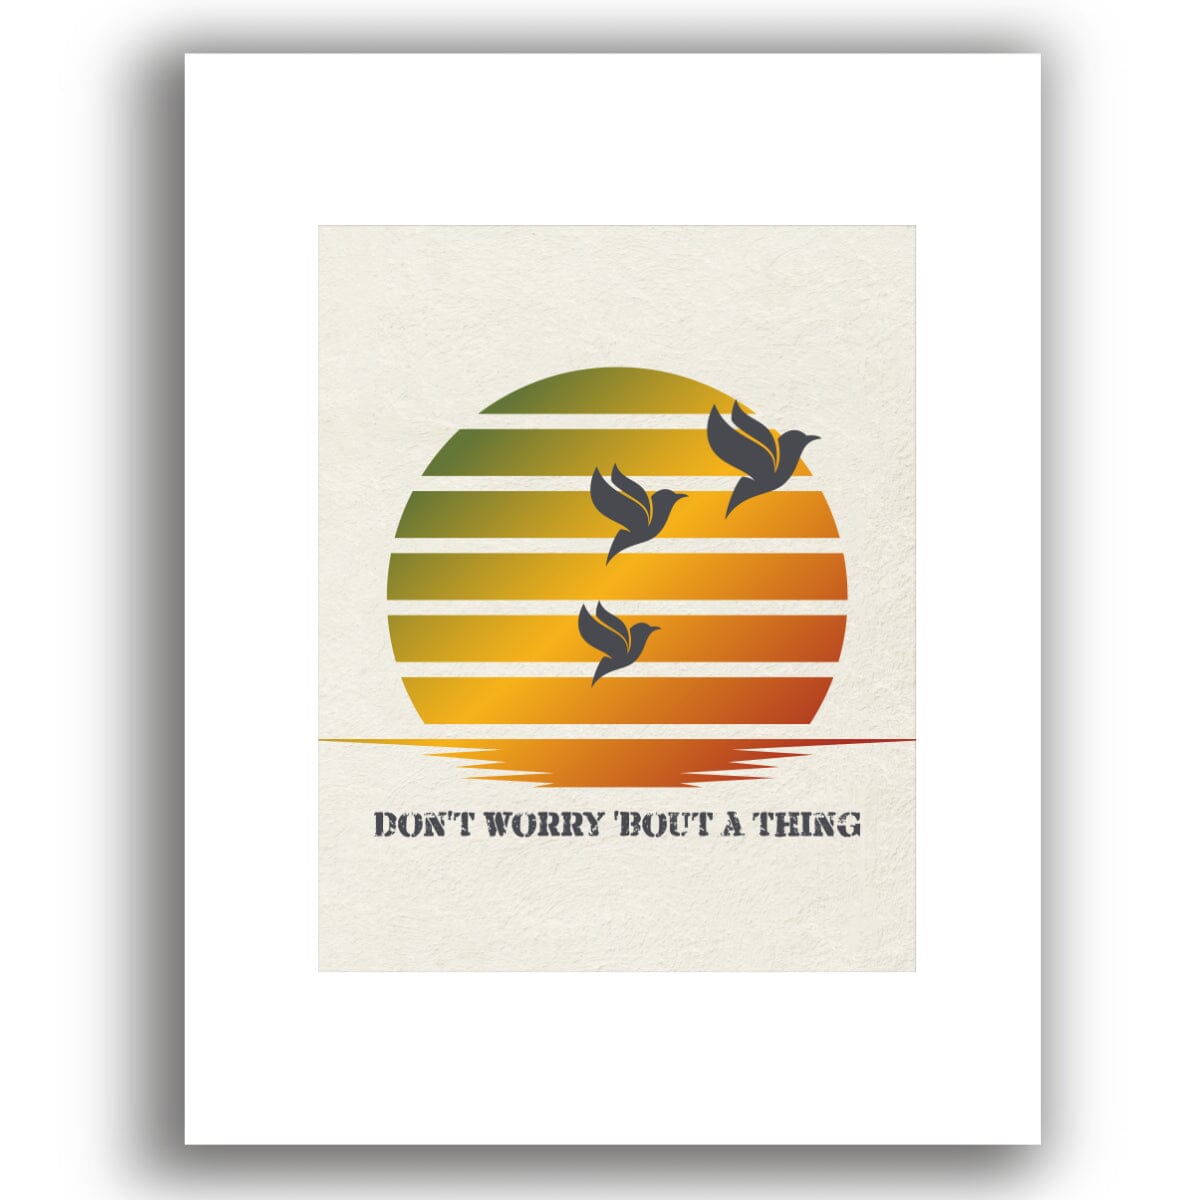 Three Little Birds by Bob Marley - Reggae Song Lyric Art Song Lyrics Art Song Lyrics Art 8x10 White Matted Print 